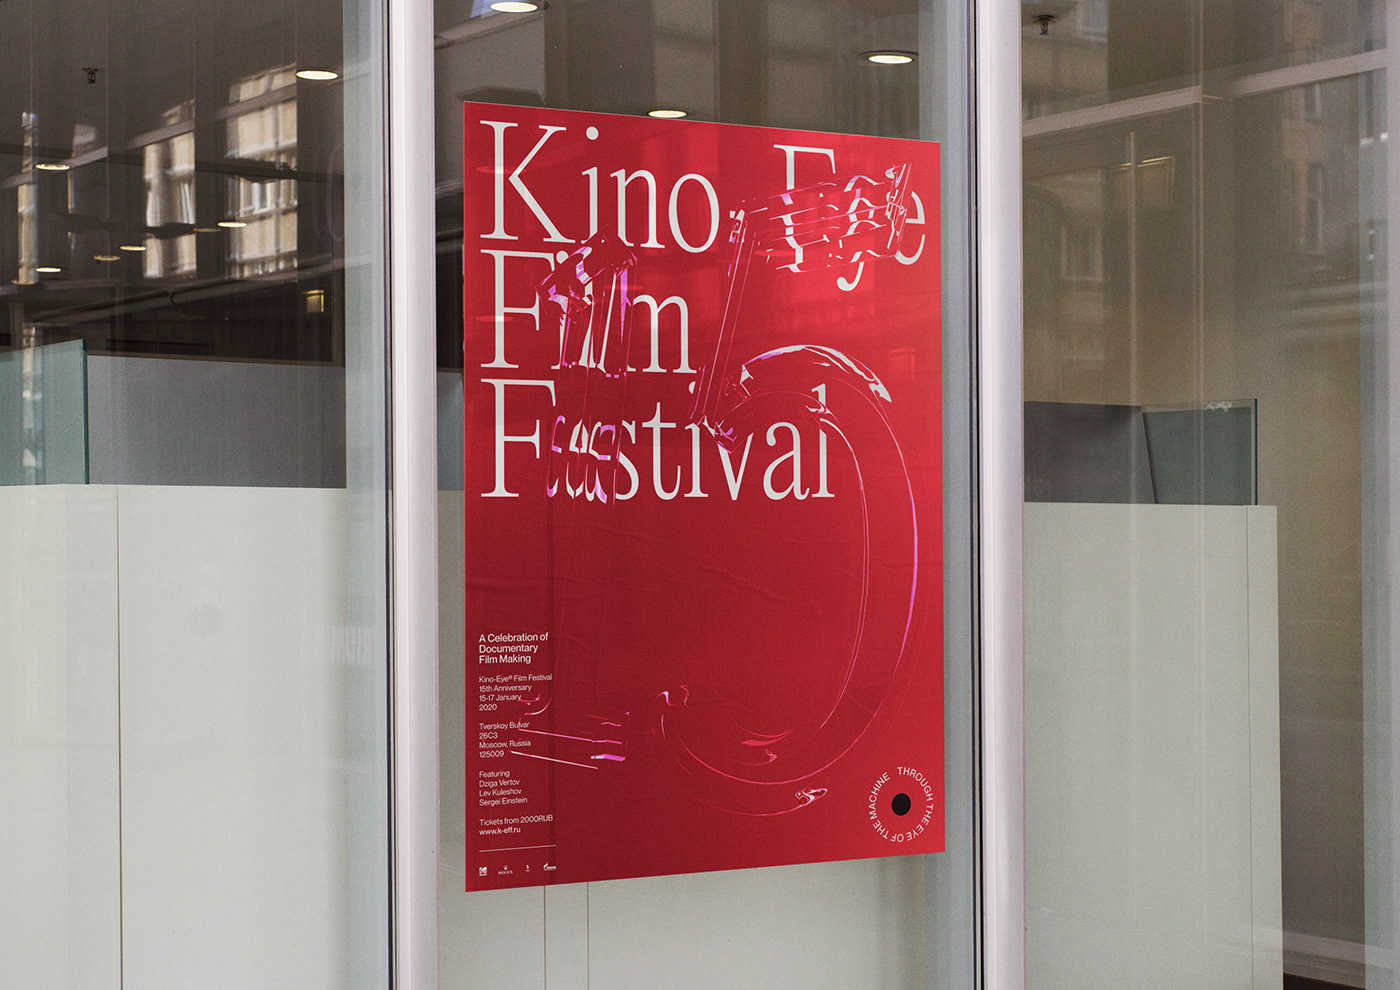 festival Film   film festival festival design typography   branding  festival branding Advertising 